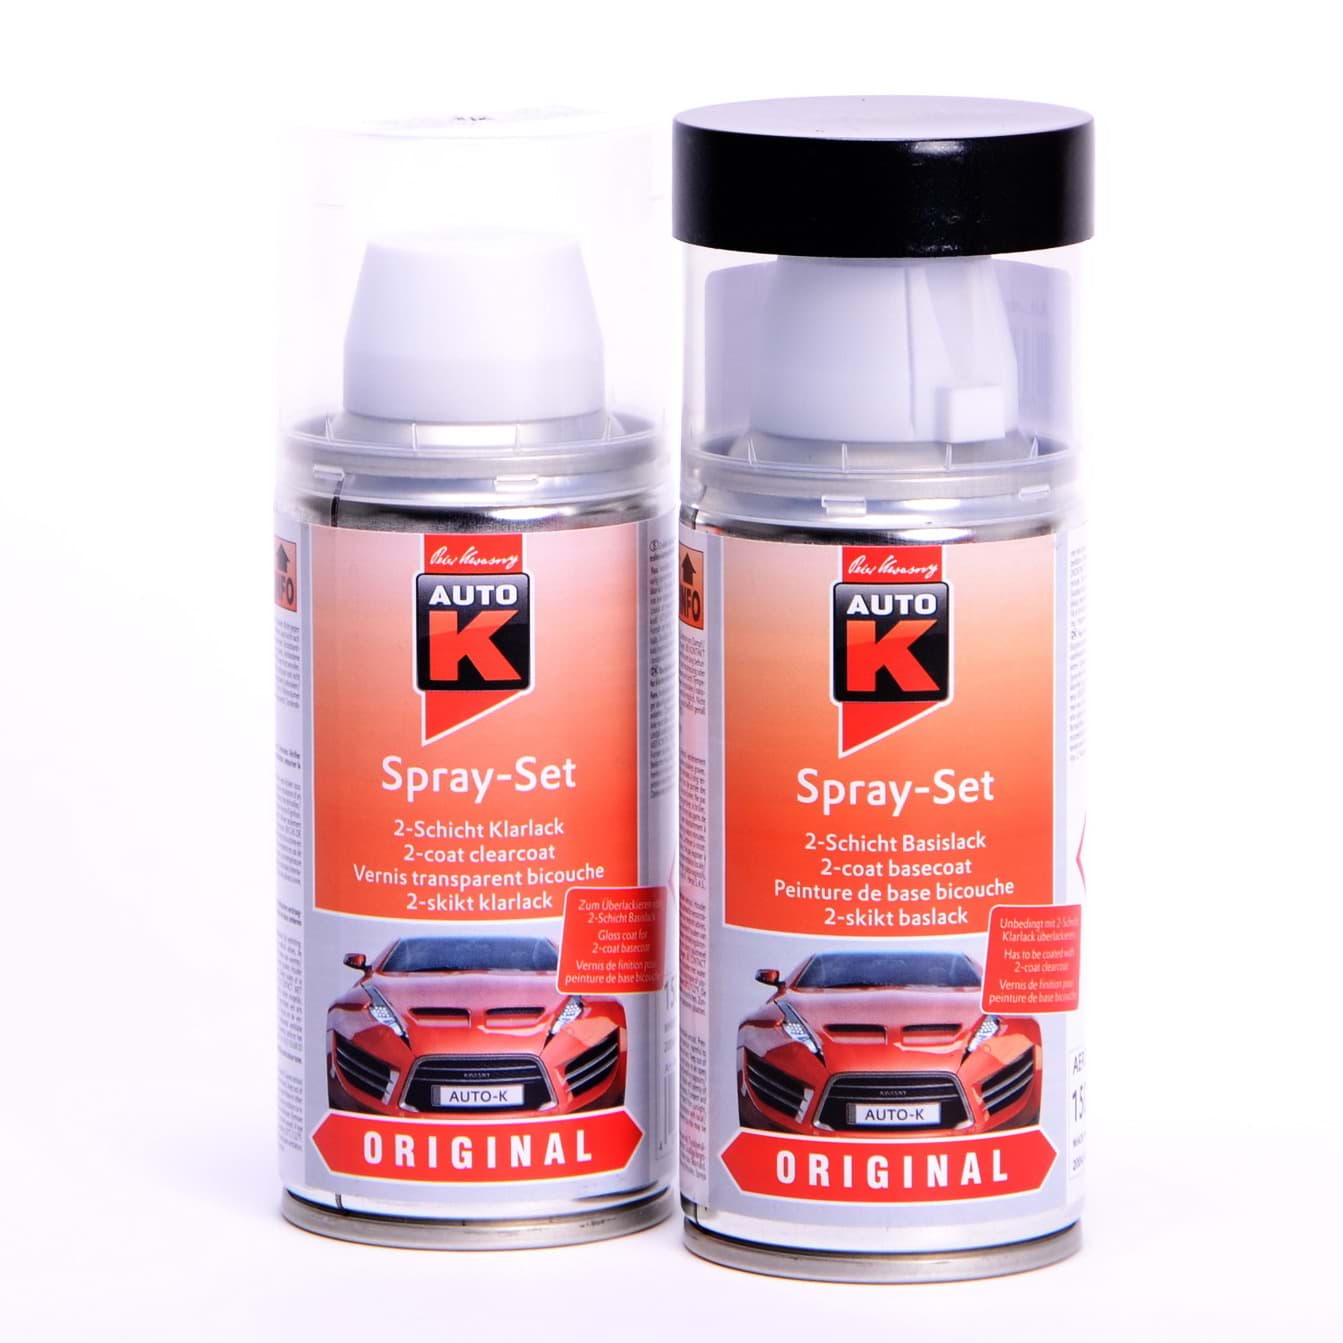 Auto-K Spray-Set Autolack für Fiat 639 Grigio Quartz met 24474 resmi